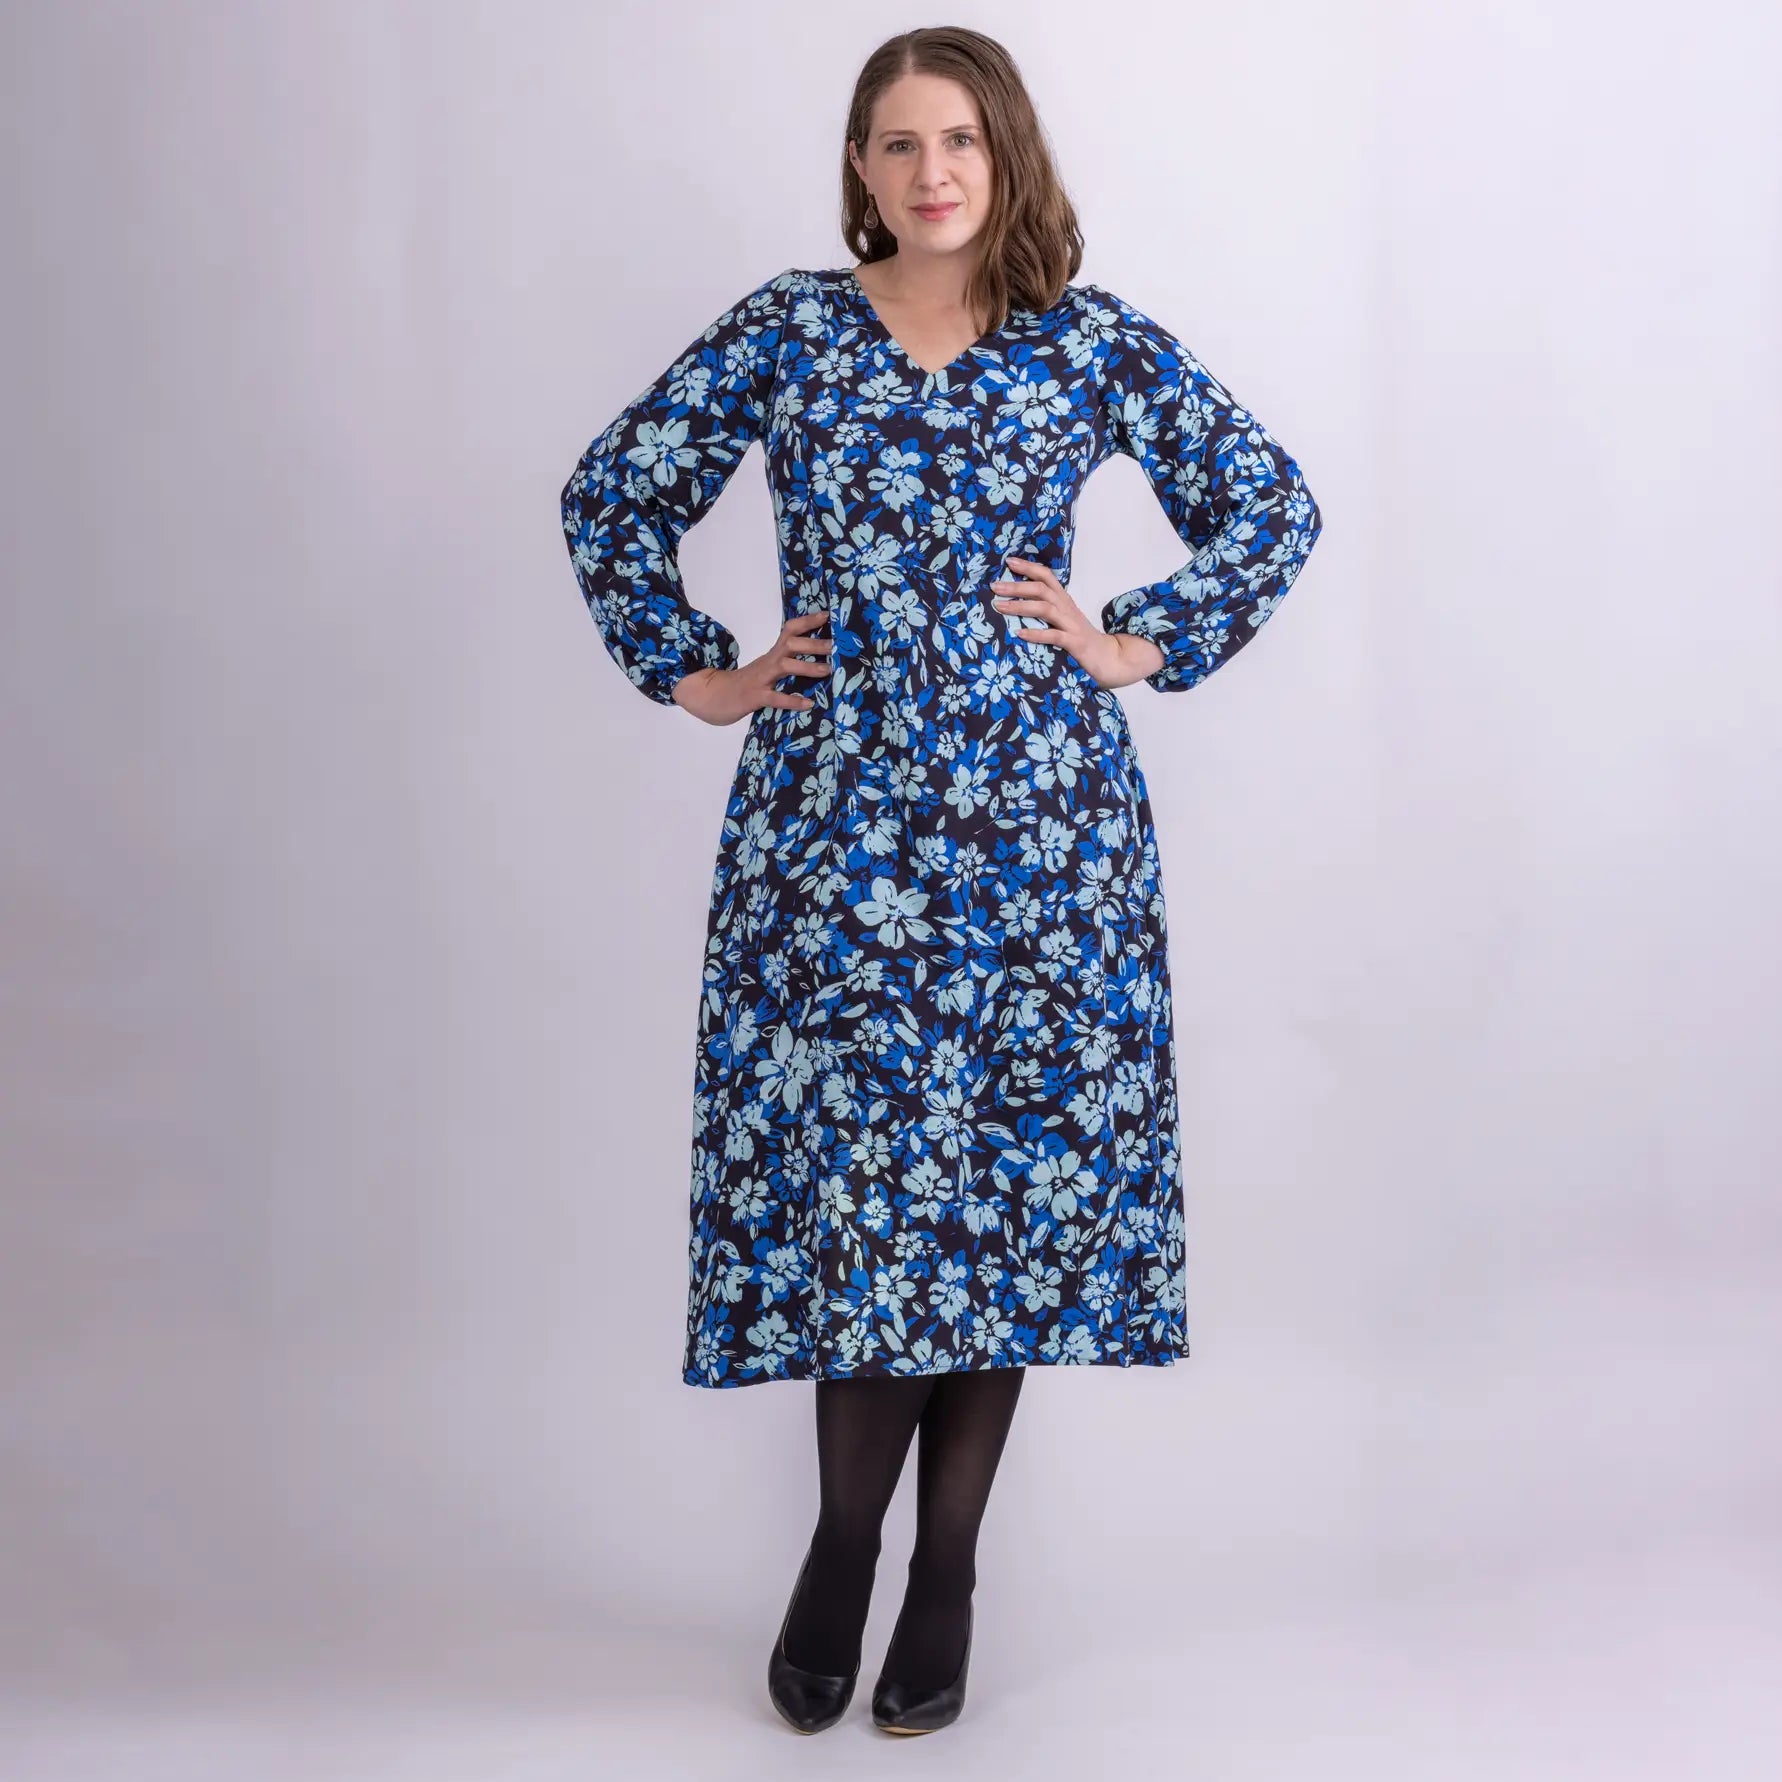 blue floral print long sleeve designer dress with pockets